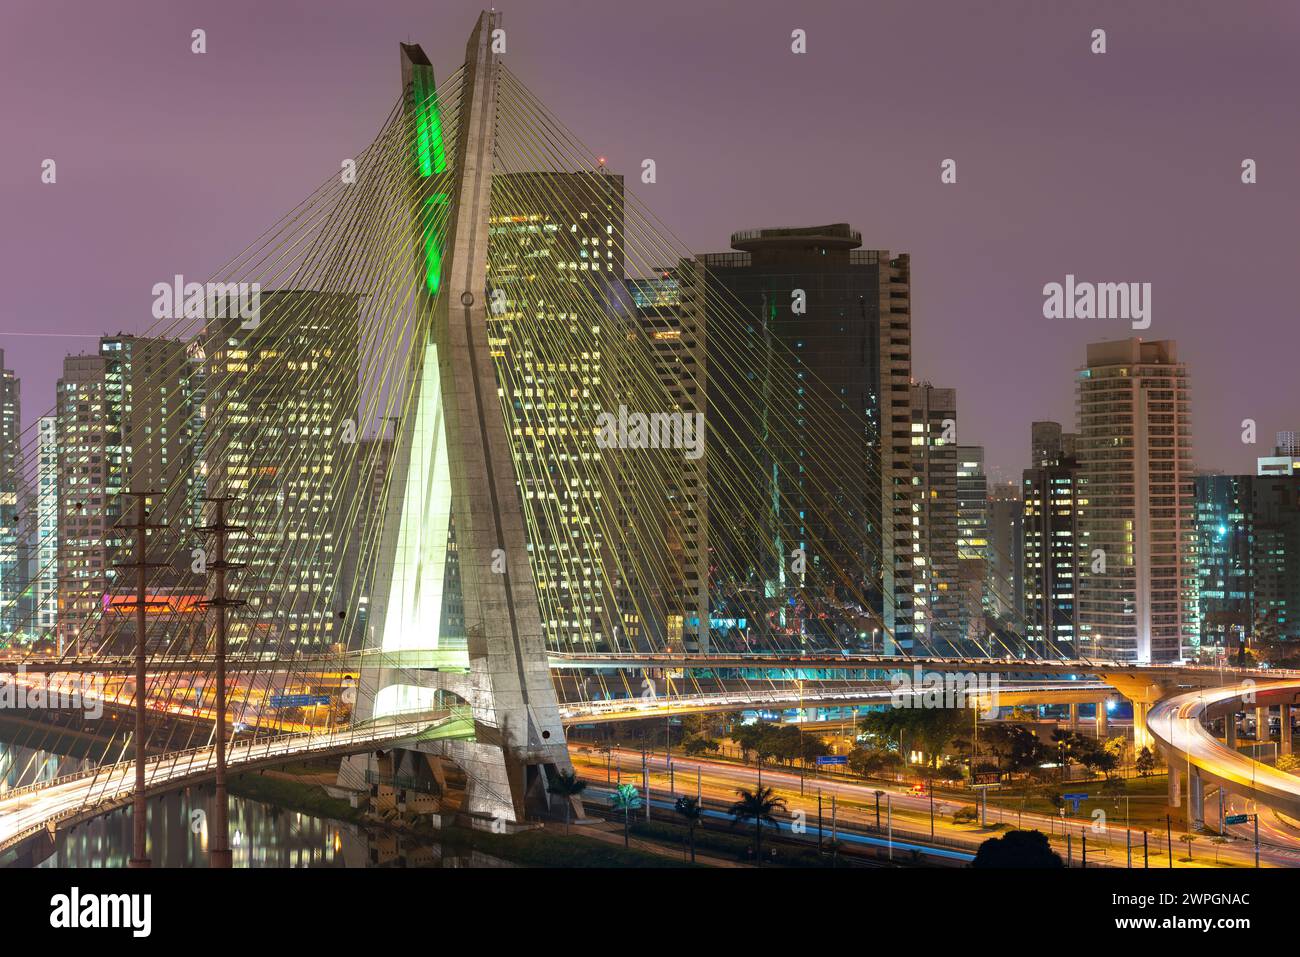 Octavio Frias de Oliveira; Brücke und Skyline von Sao Paulo bei Nacht, Brasilien Stockfoto